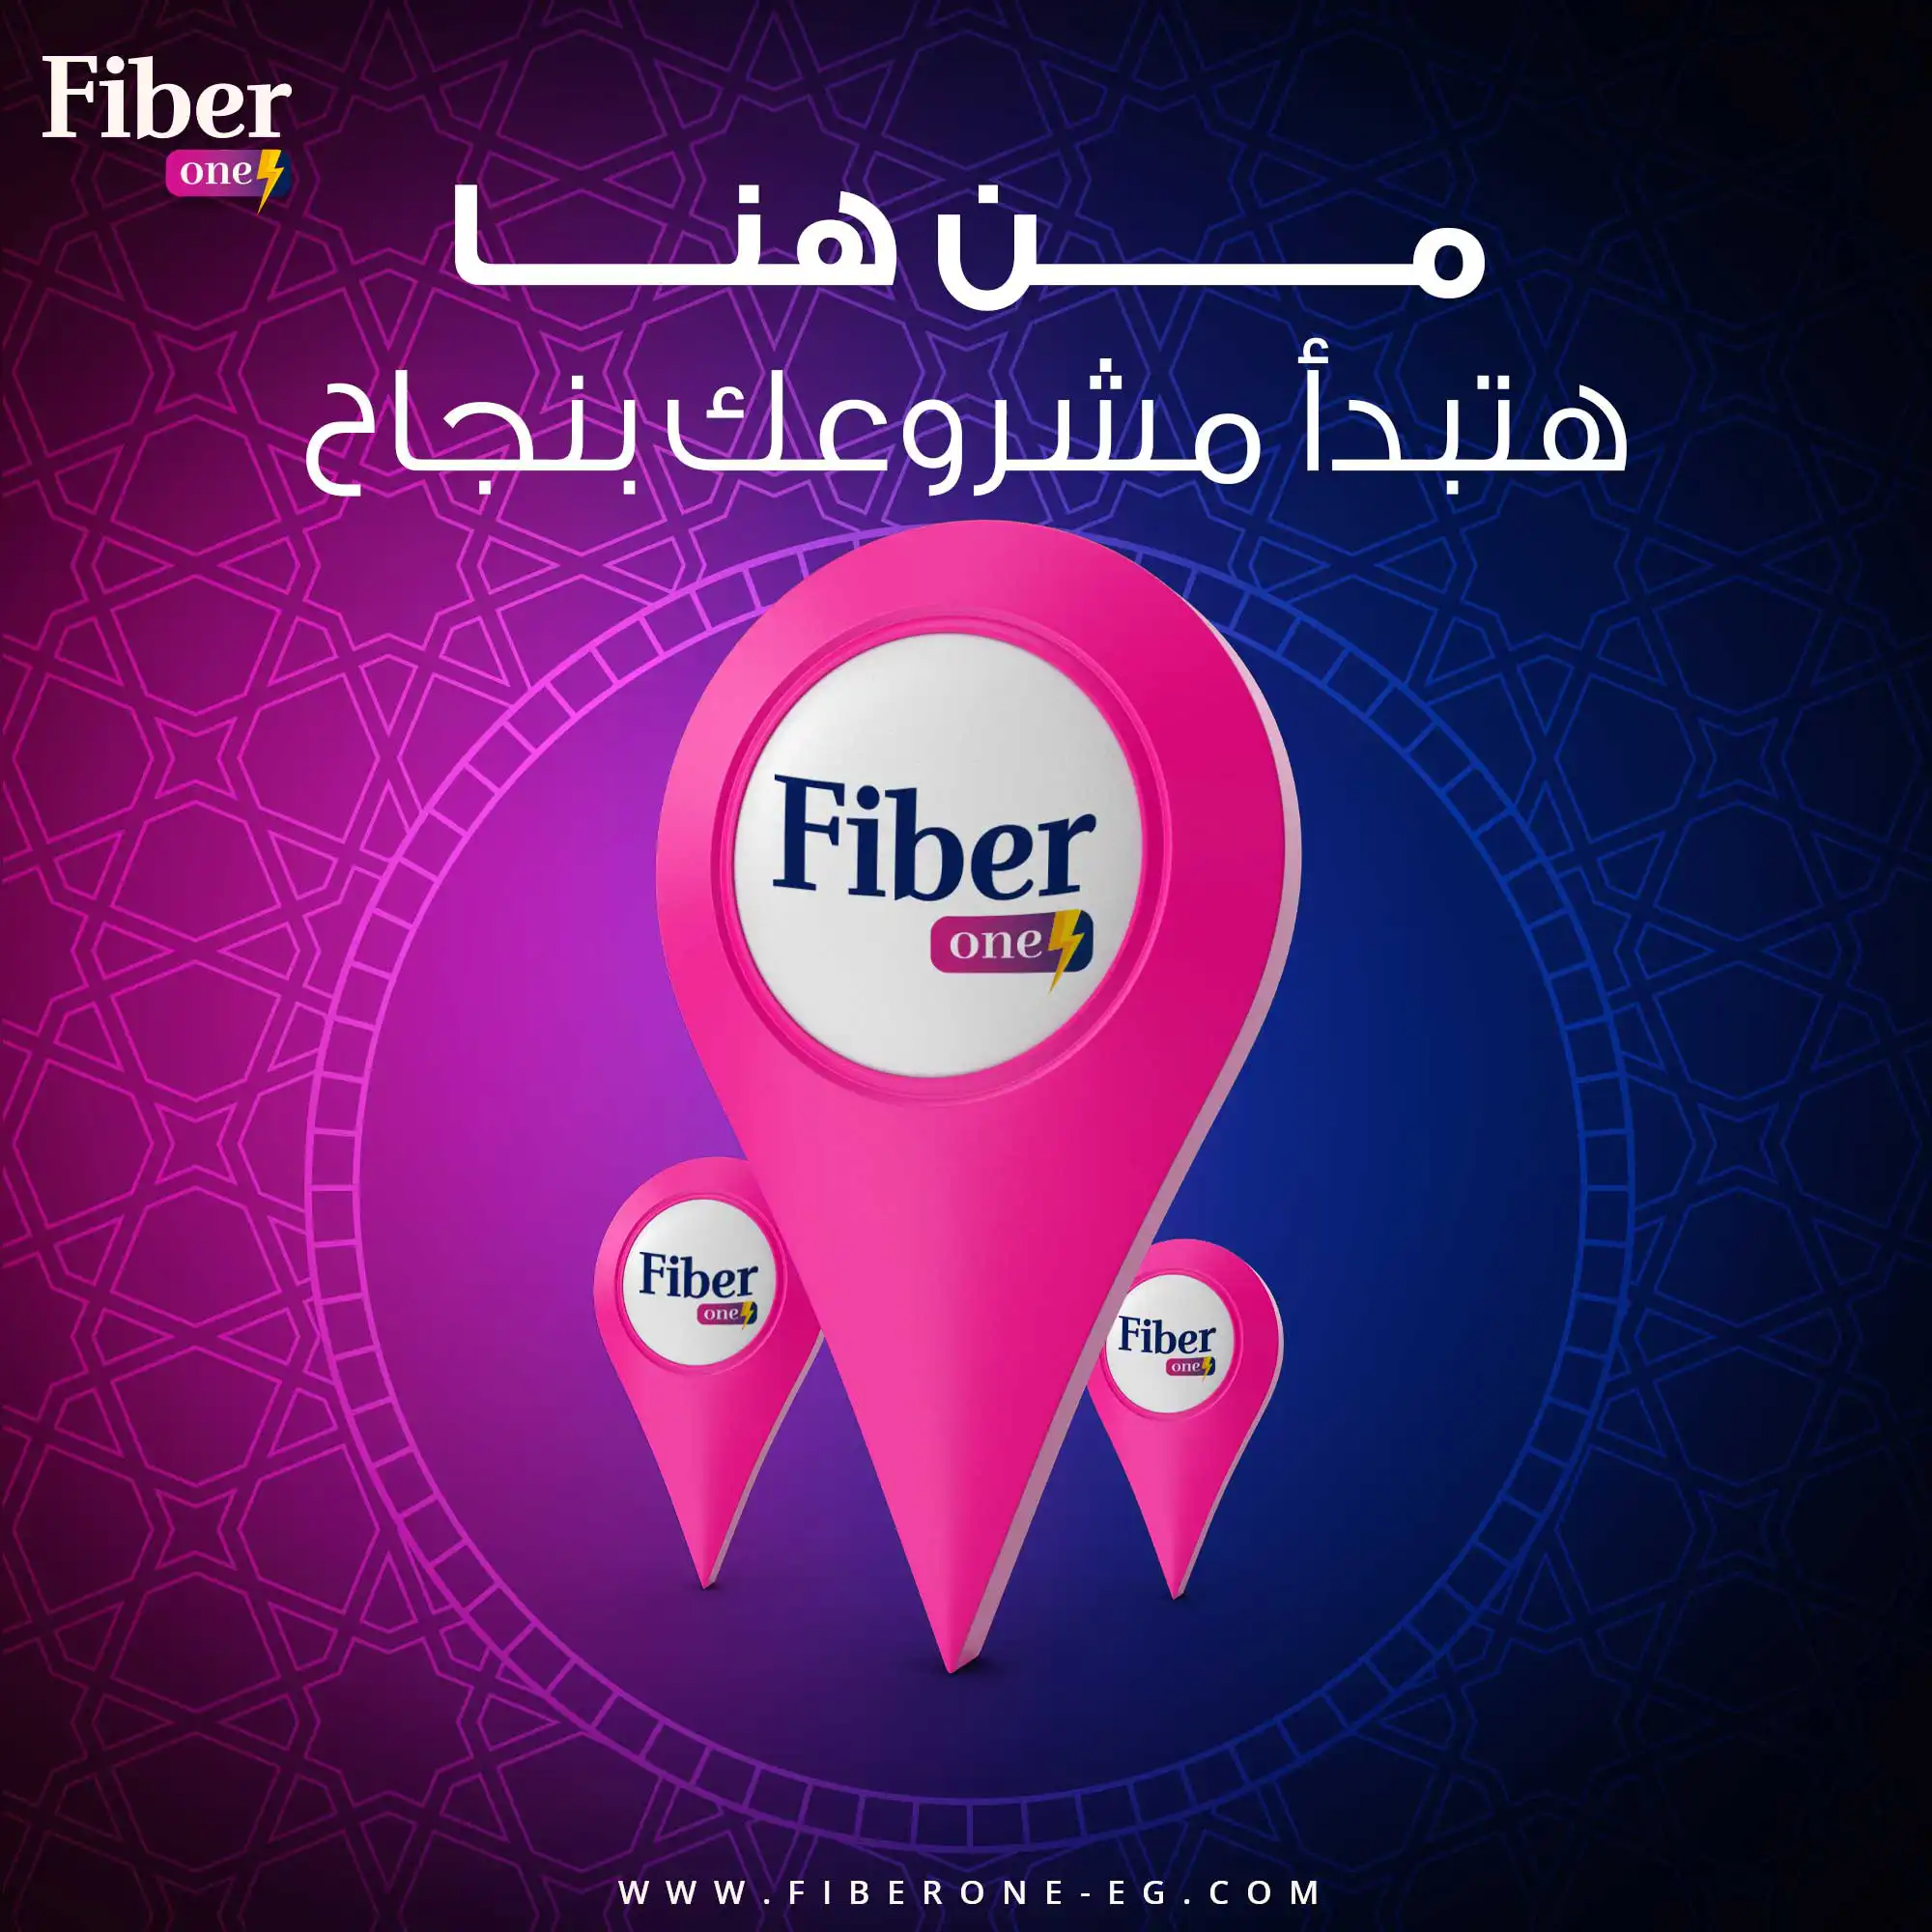 fiber one social media 11